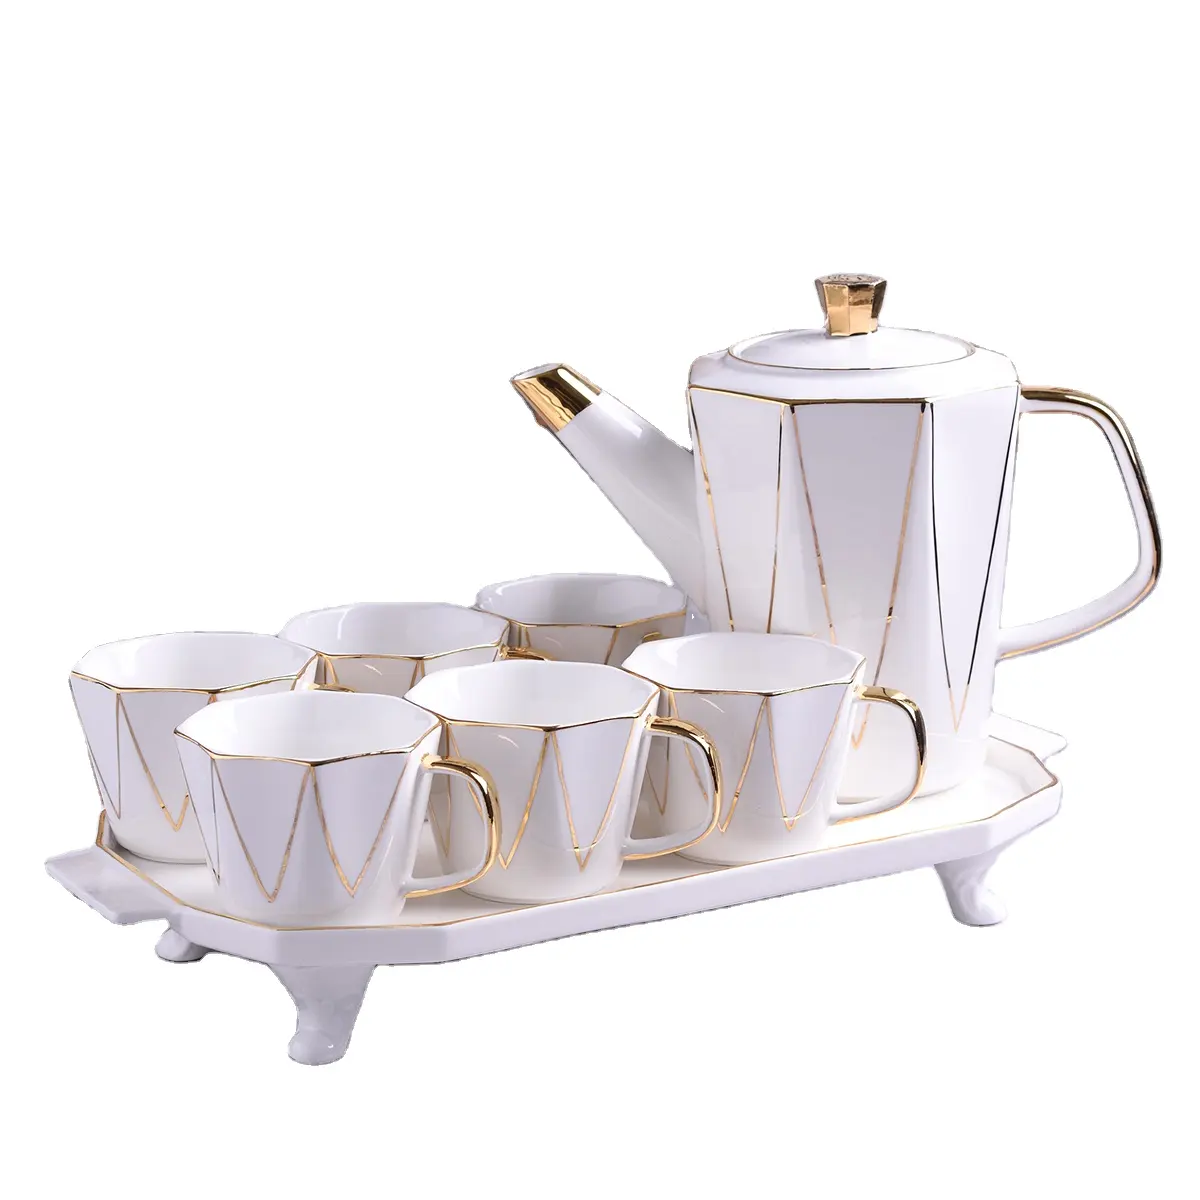 Conjunto de chá de porcelana em 8 peças, conjunto de chá de café da porcelana com decoração dourada, bule de cerâmica e copo, chá turco